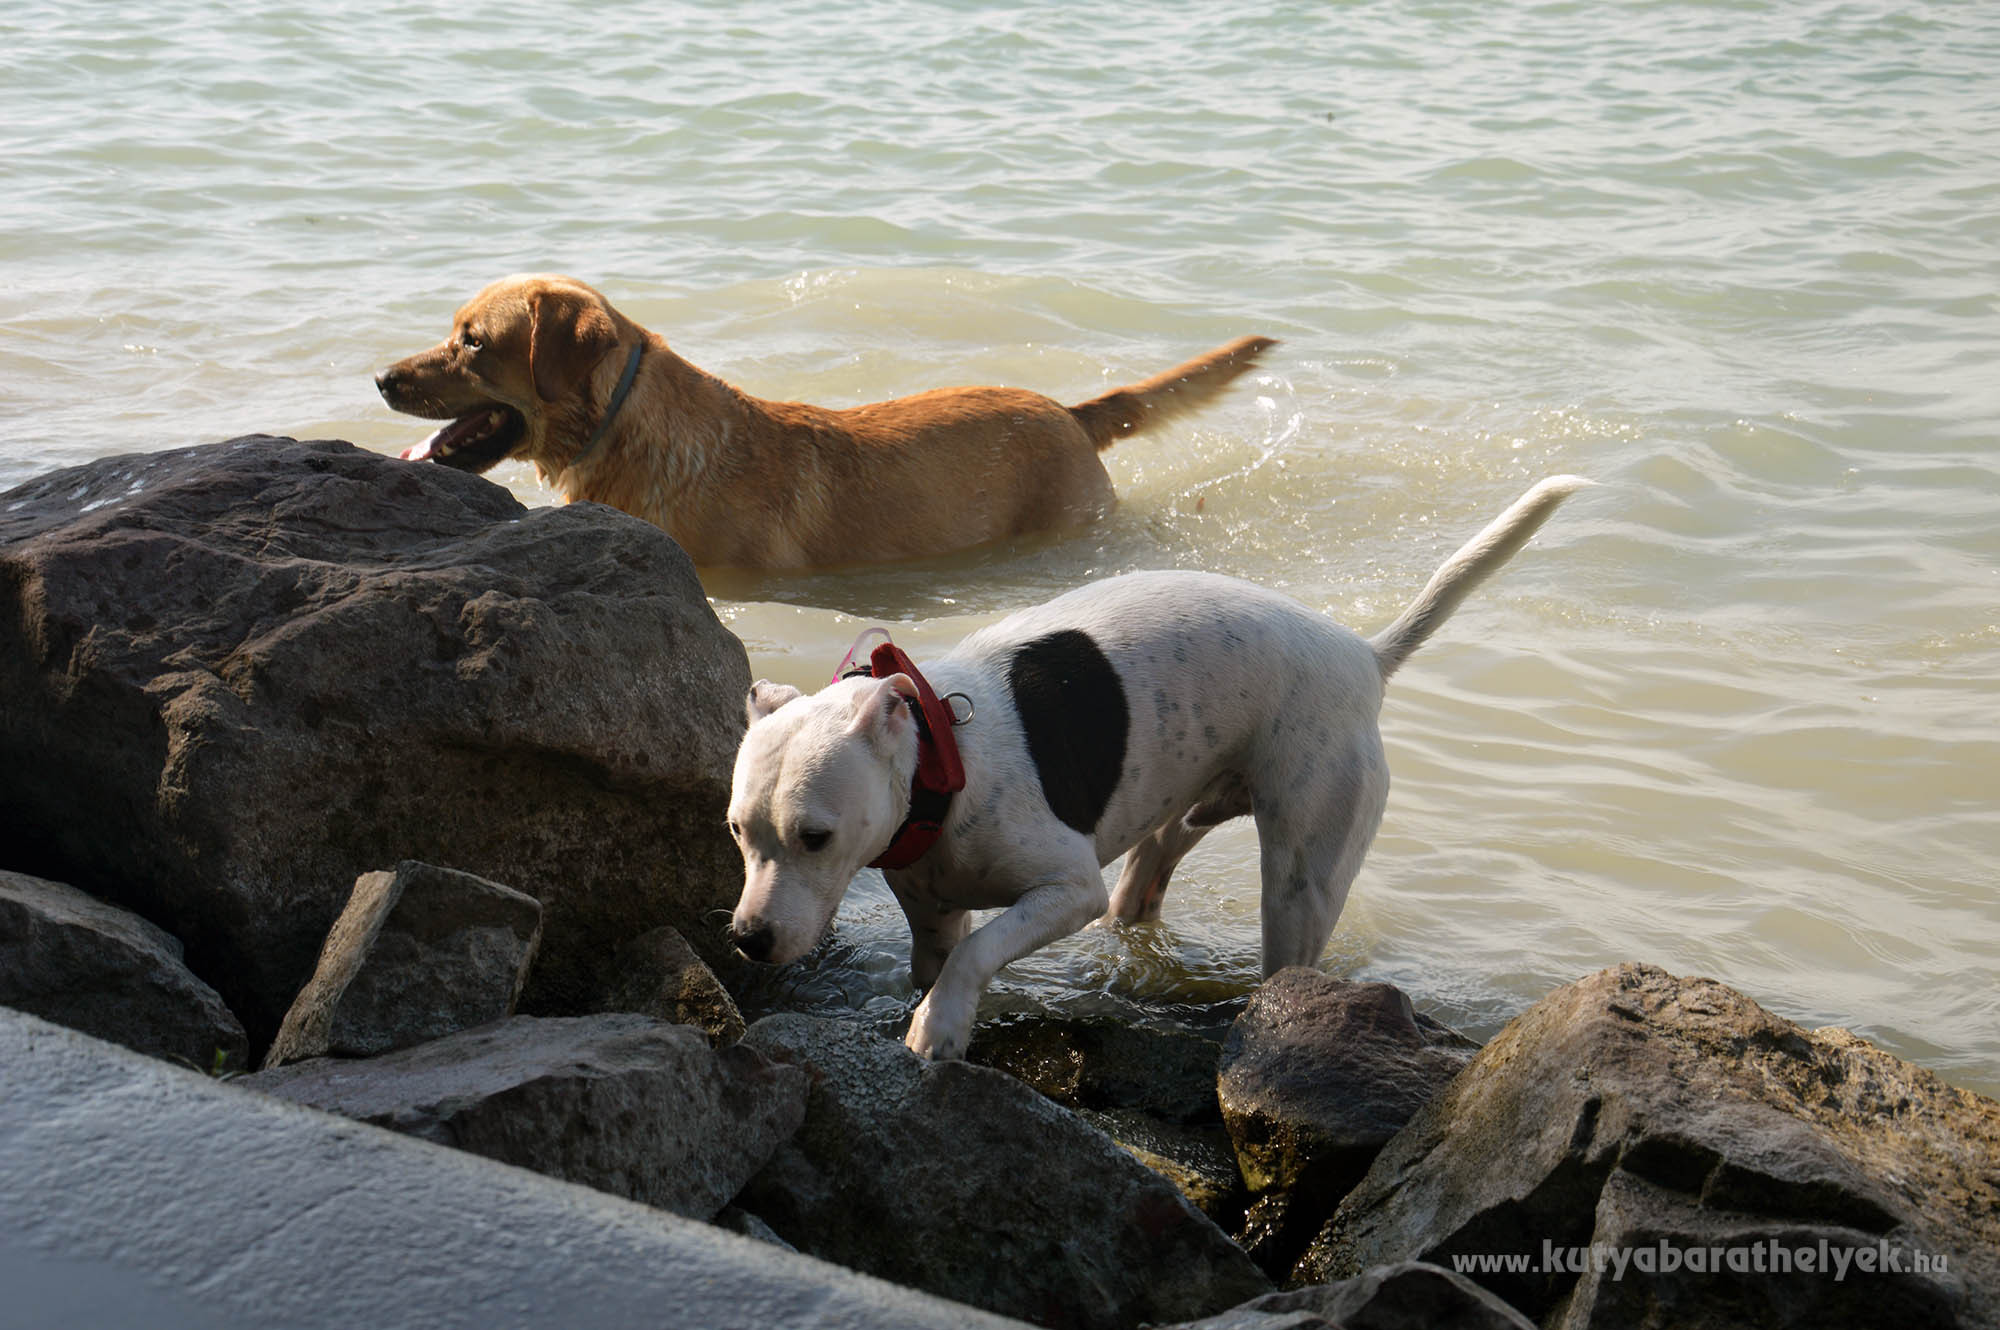 A kutyusok nagyon élvezték a vizet!